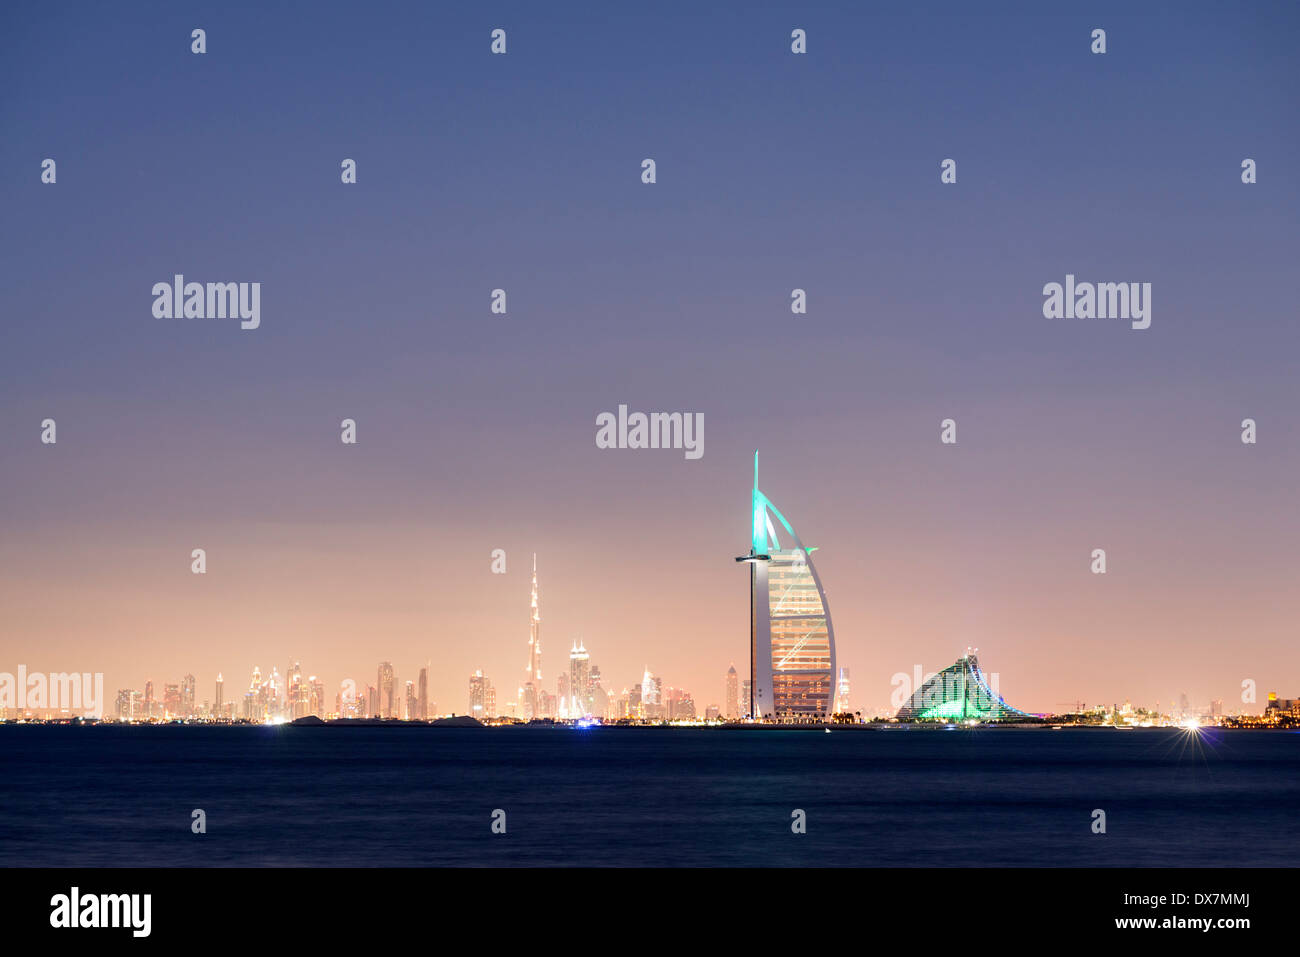 Nuit d'horizon de l'océan à l'hôtel de luxe Burj Al Arab et ville de Dubaï avec tour Burj Khalifa en distance Emirats Arabes Unis Banque D'Images